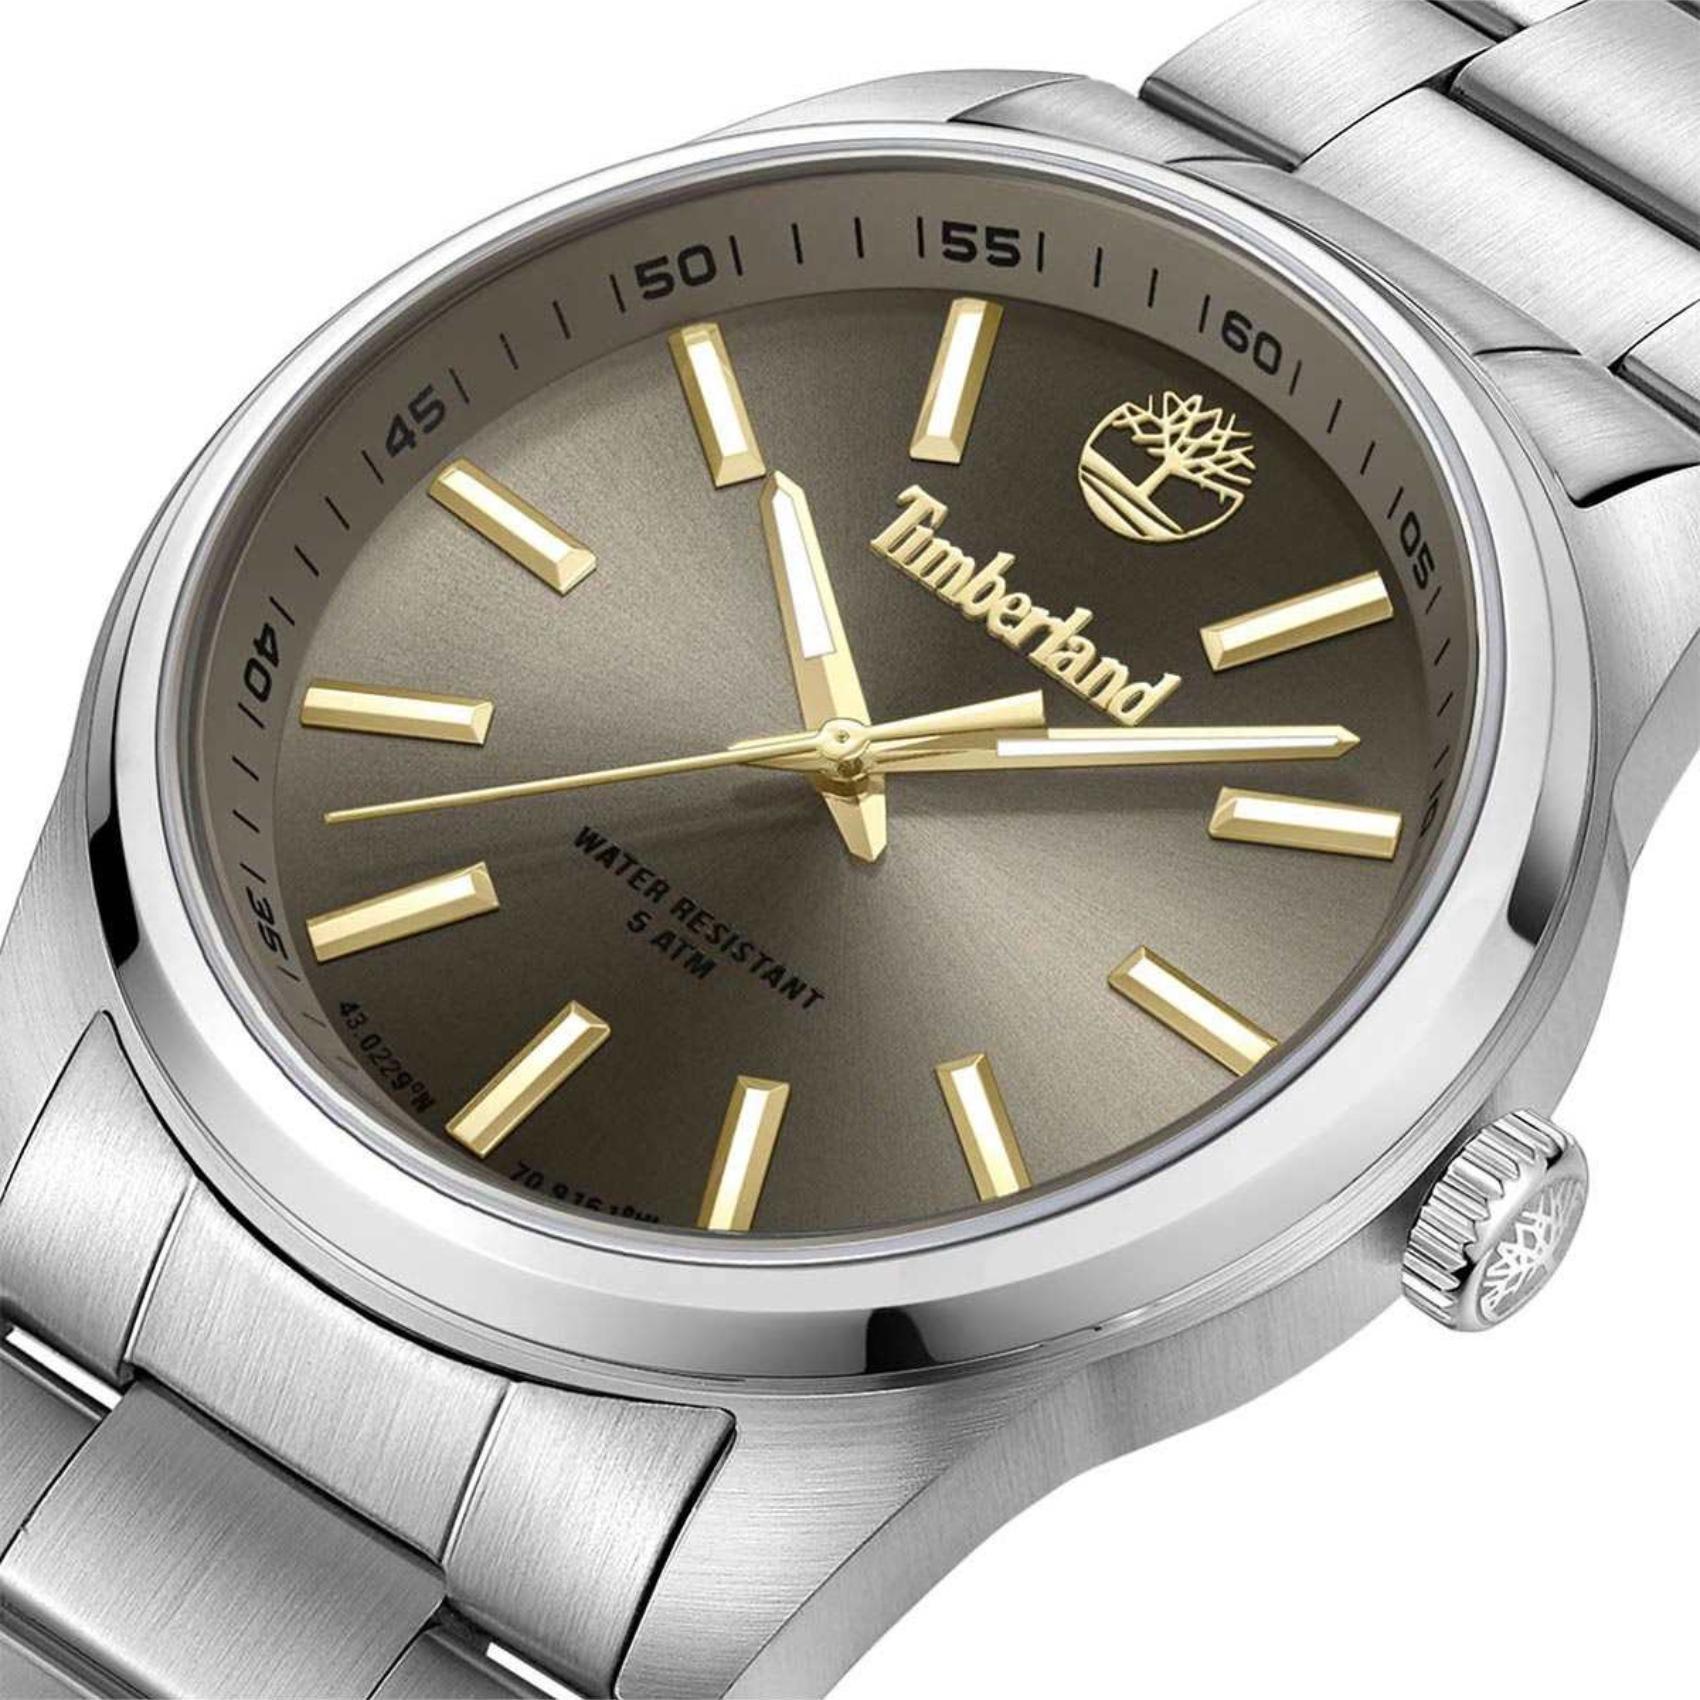 Αντρικό ρολόι Timberland Northbridge TDWGG0010807 με ασημί ατσάλινο μπρσελέ και καφέ καντράν διαμέτρου 46mm και ημέρα-ημερομηνία.